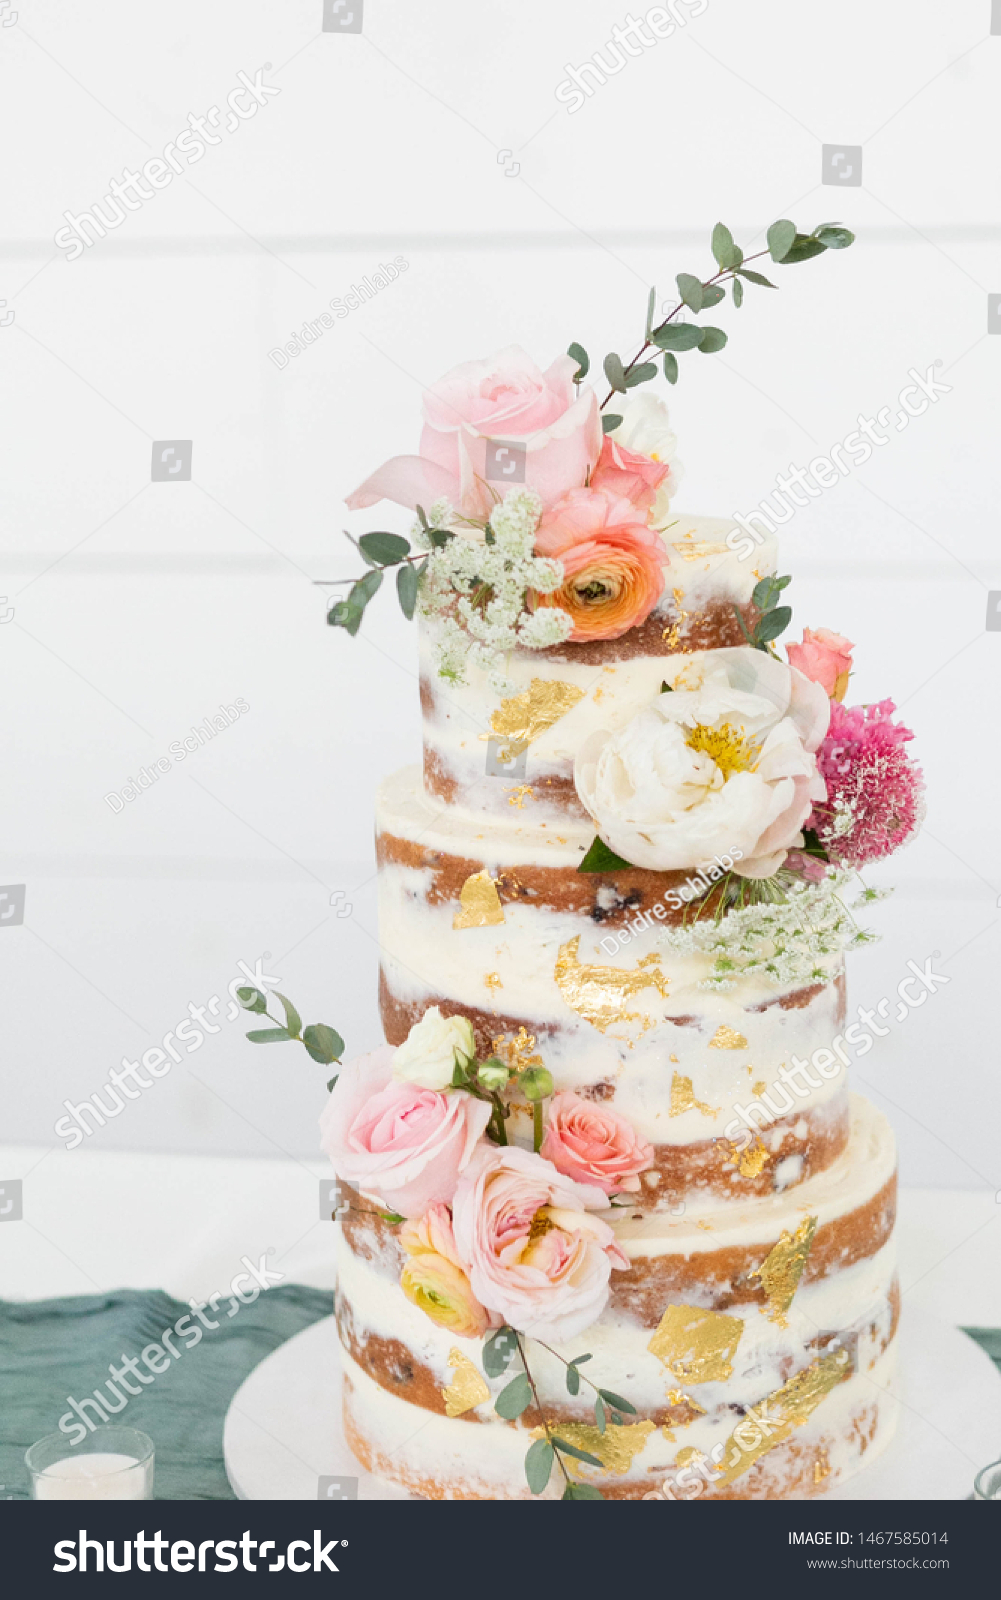 白い背景に裸のウエディングケーキ 金箔と花で飾り付け 三重のケーキ コピー用スペース の写真素材 今すぐ編集